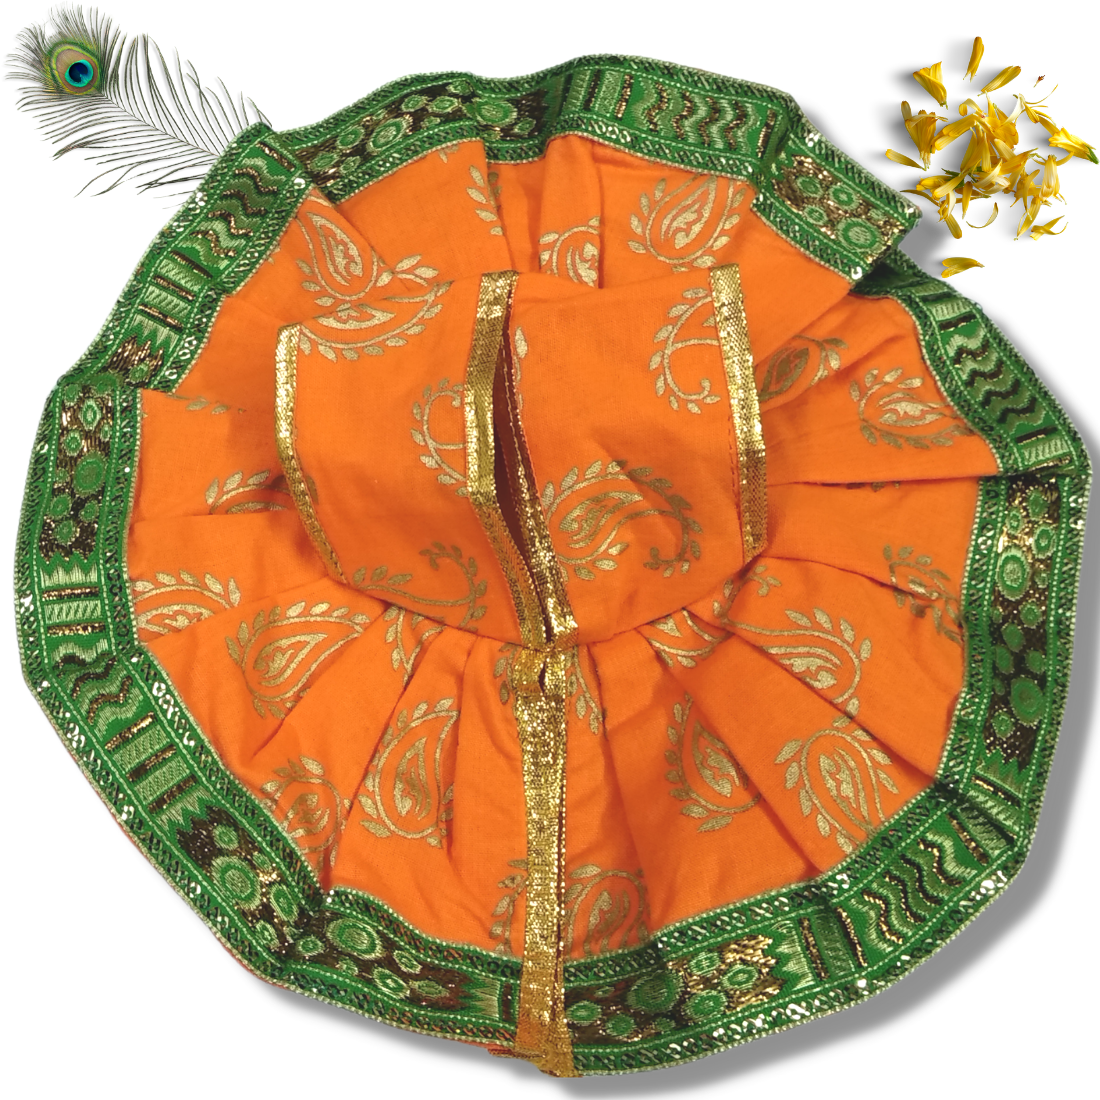 Multicolored Embroidery Laddu Gopal Dress – My Laddu Gopala